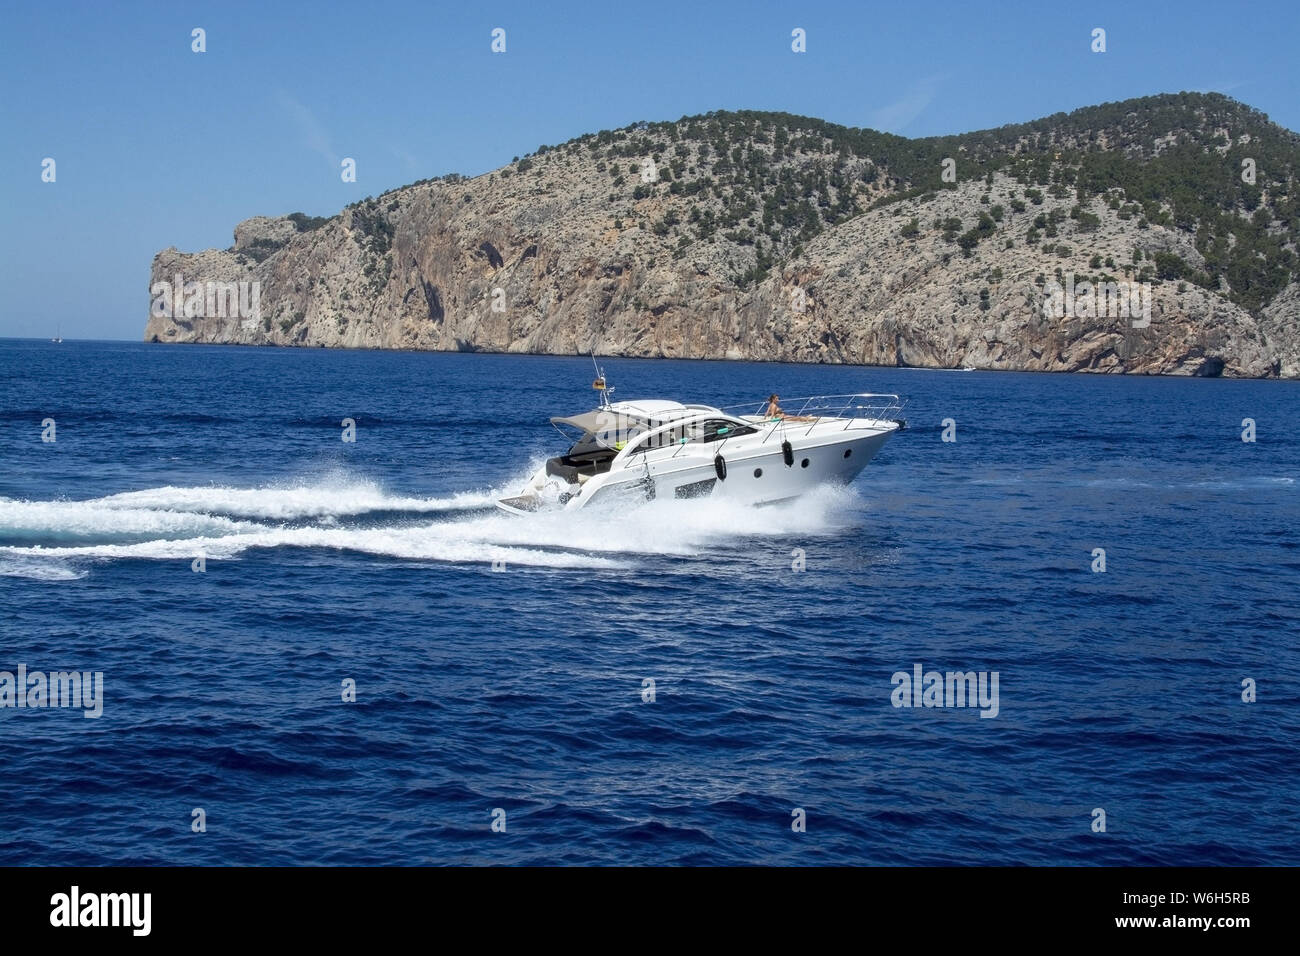 MALLORCA, España - Junio 23, 2019: barco de motor con la mujer aceleración haciendo olas espumosas en un soleado día de junio 23, 2019 en Mallorca, España. Foto de stock